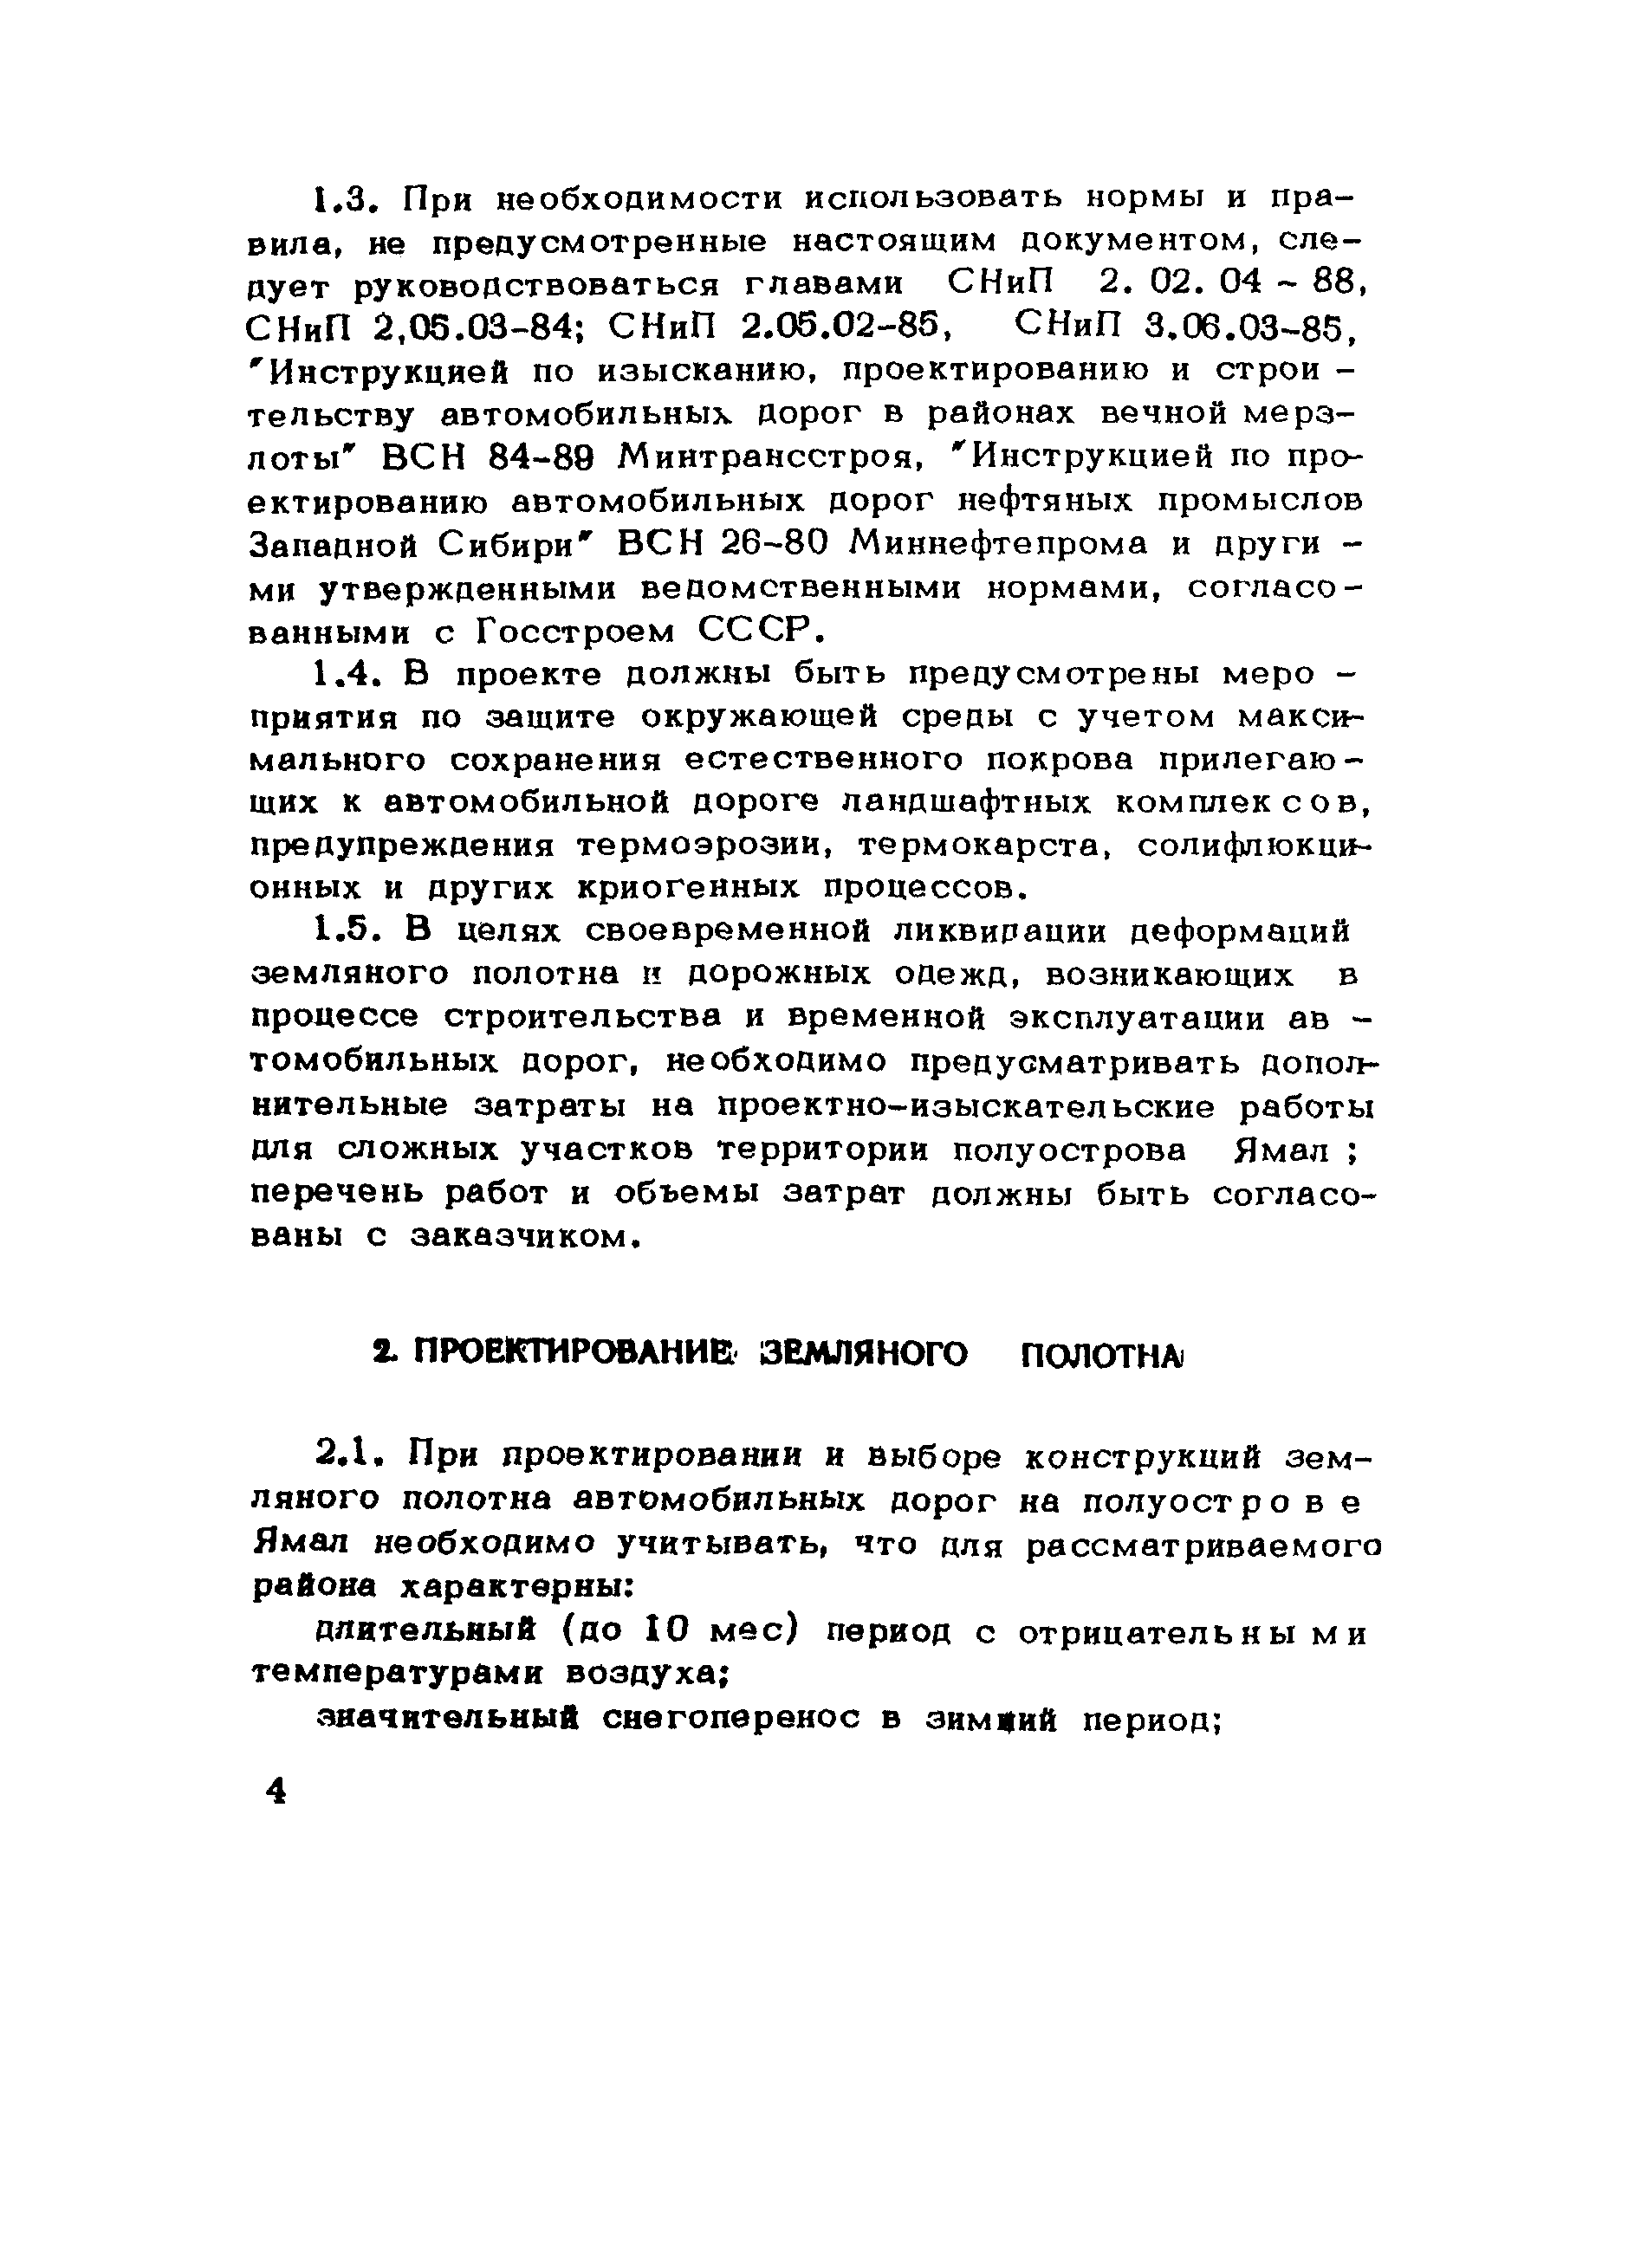 ВСН 204-88